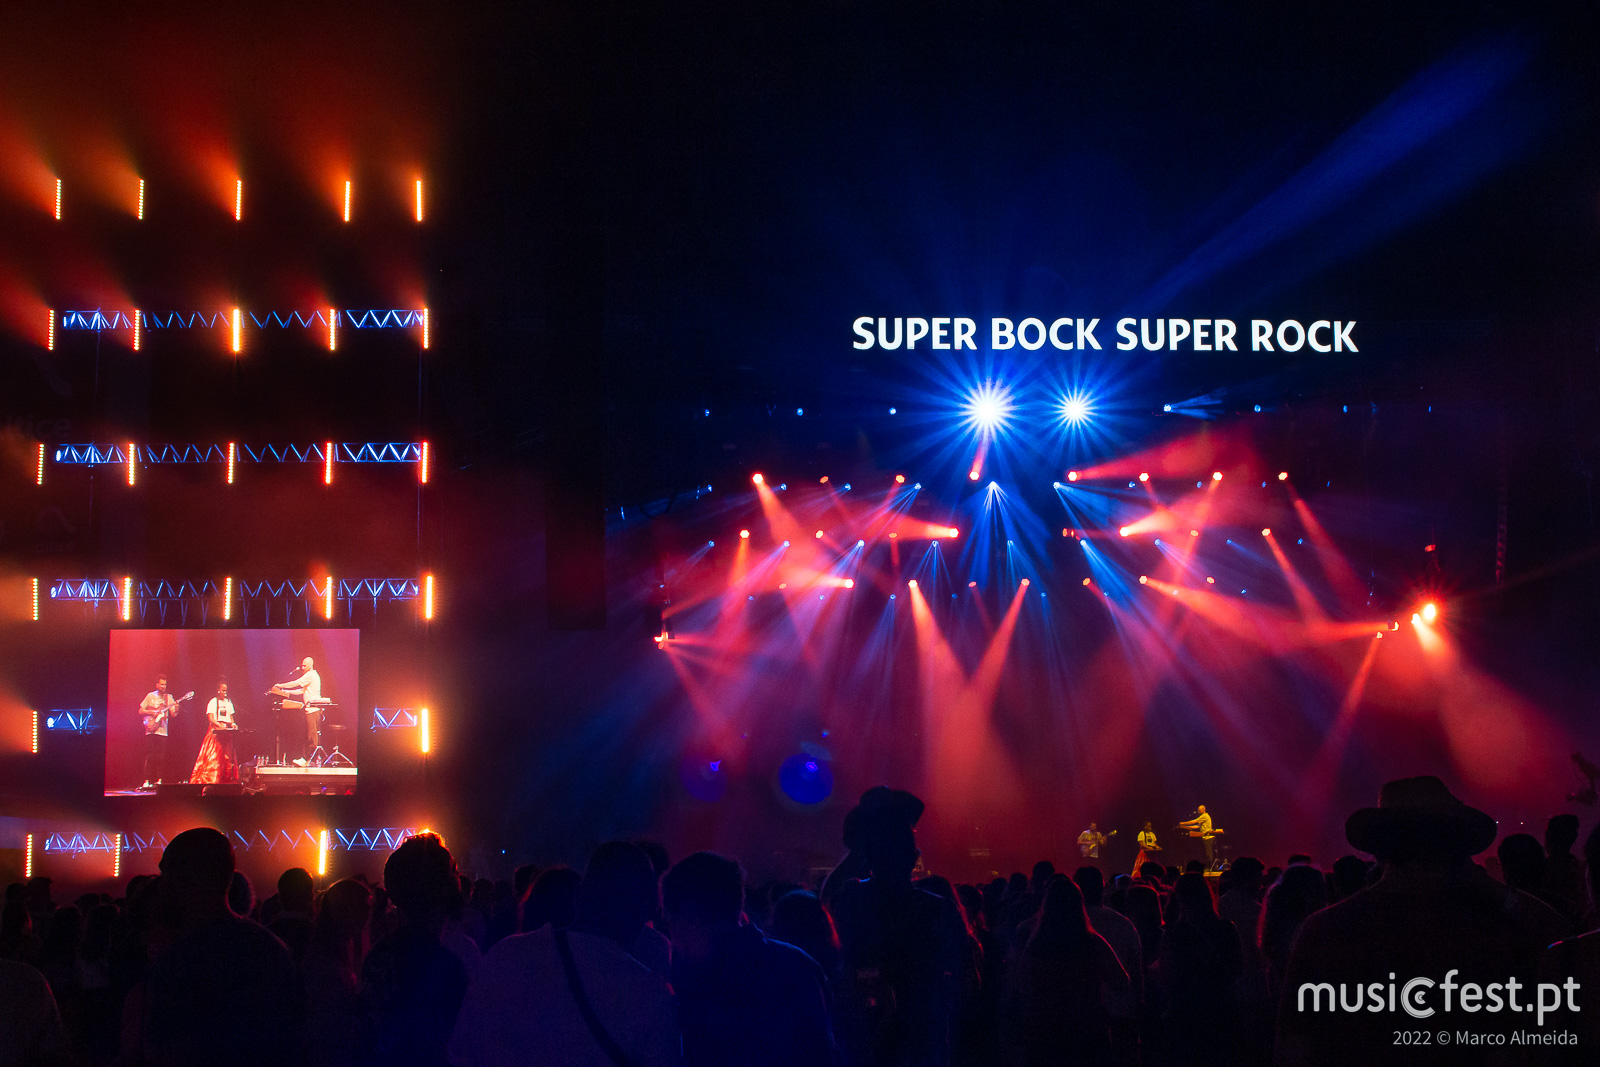 Ao terceiro dia, finalmente Super Bock Super Rock. Obrigado, Foals.